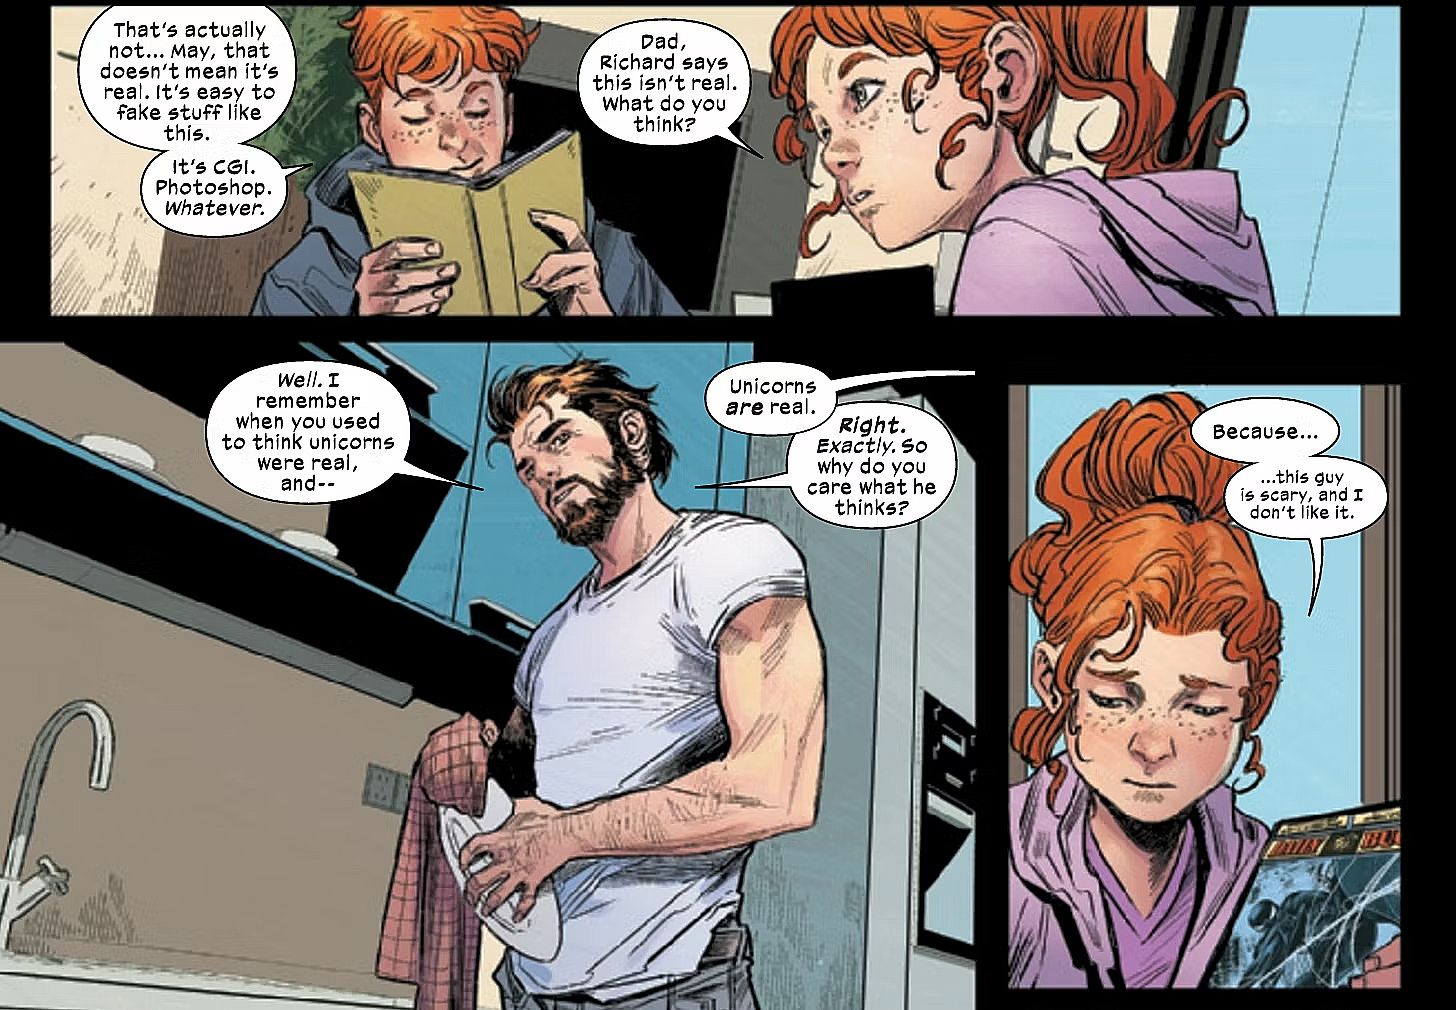 Ultimate Spider-Man #2, Peter Parker conversa com seus filhos Richard e May sobre o novo herói sem nome em Nova York